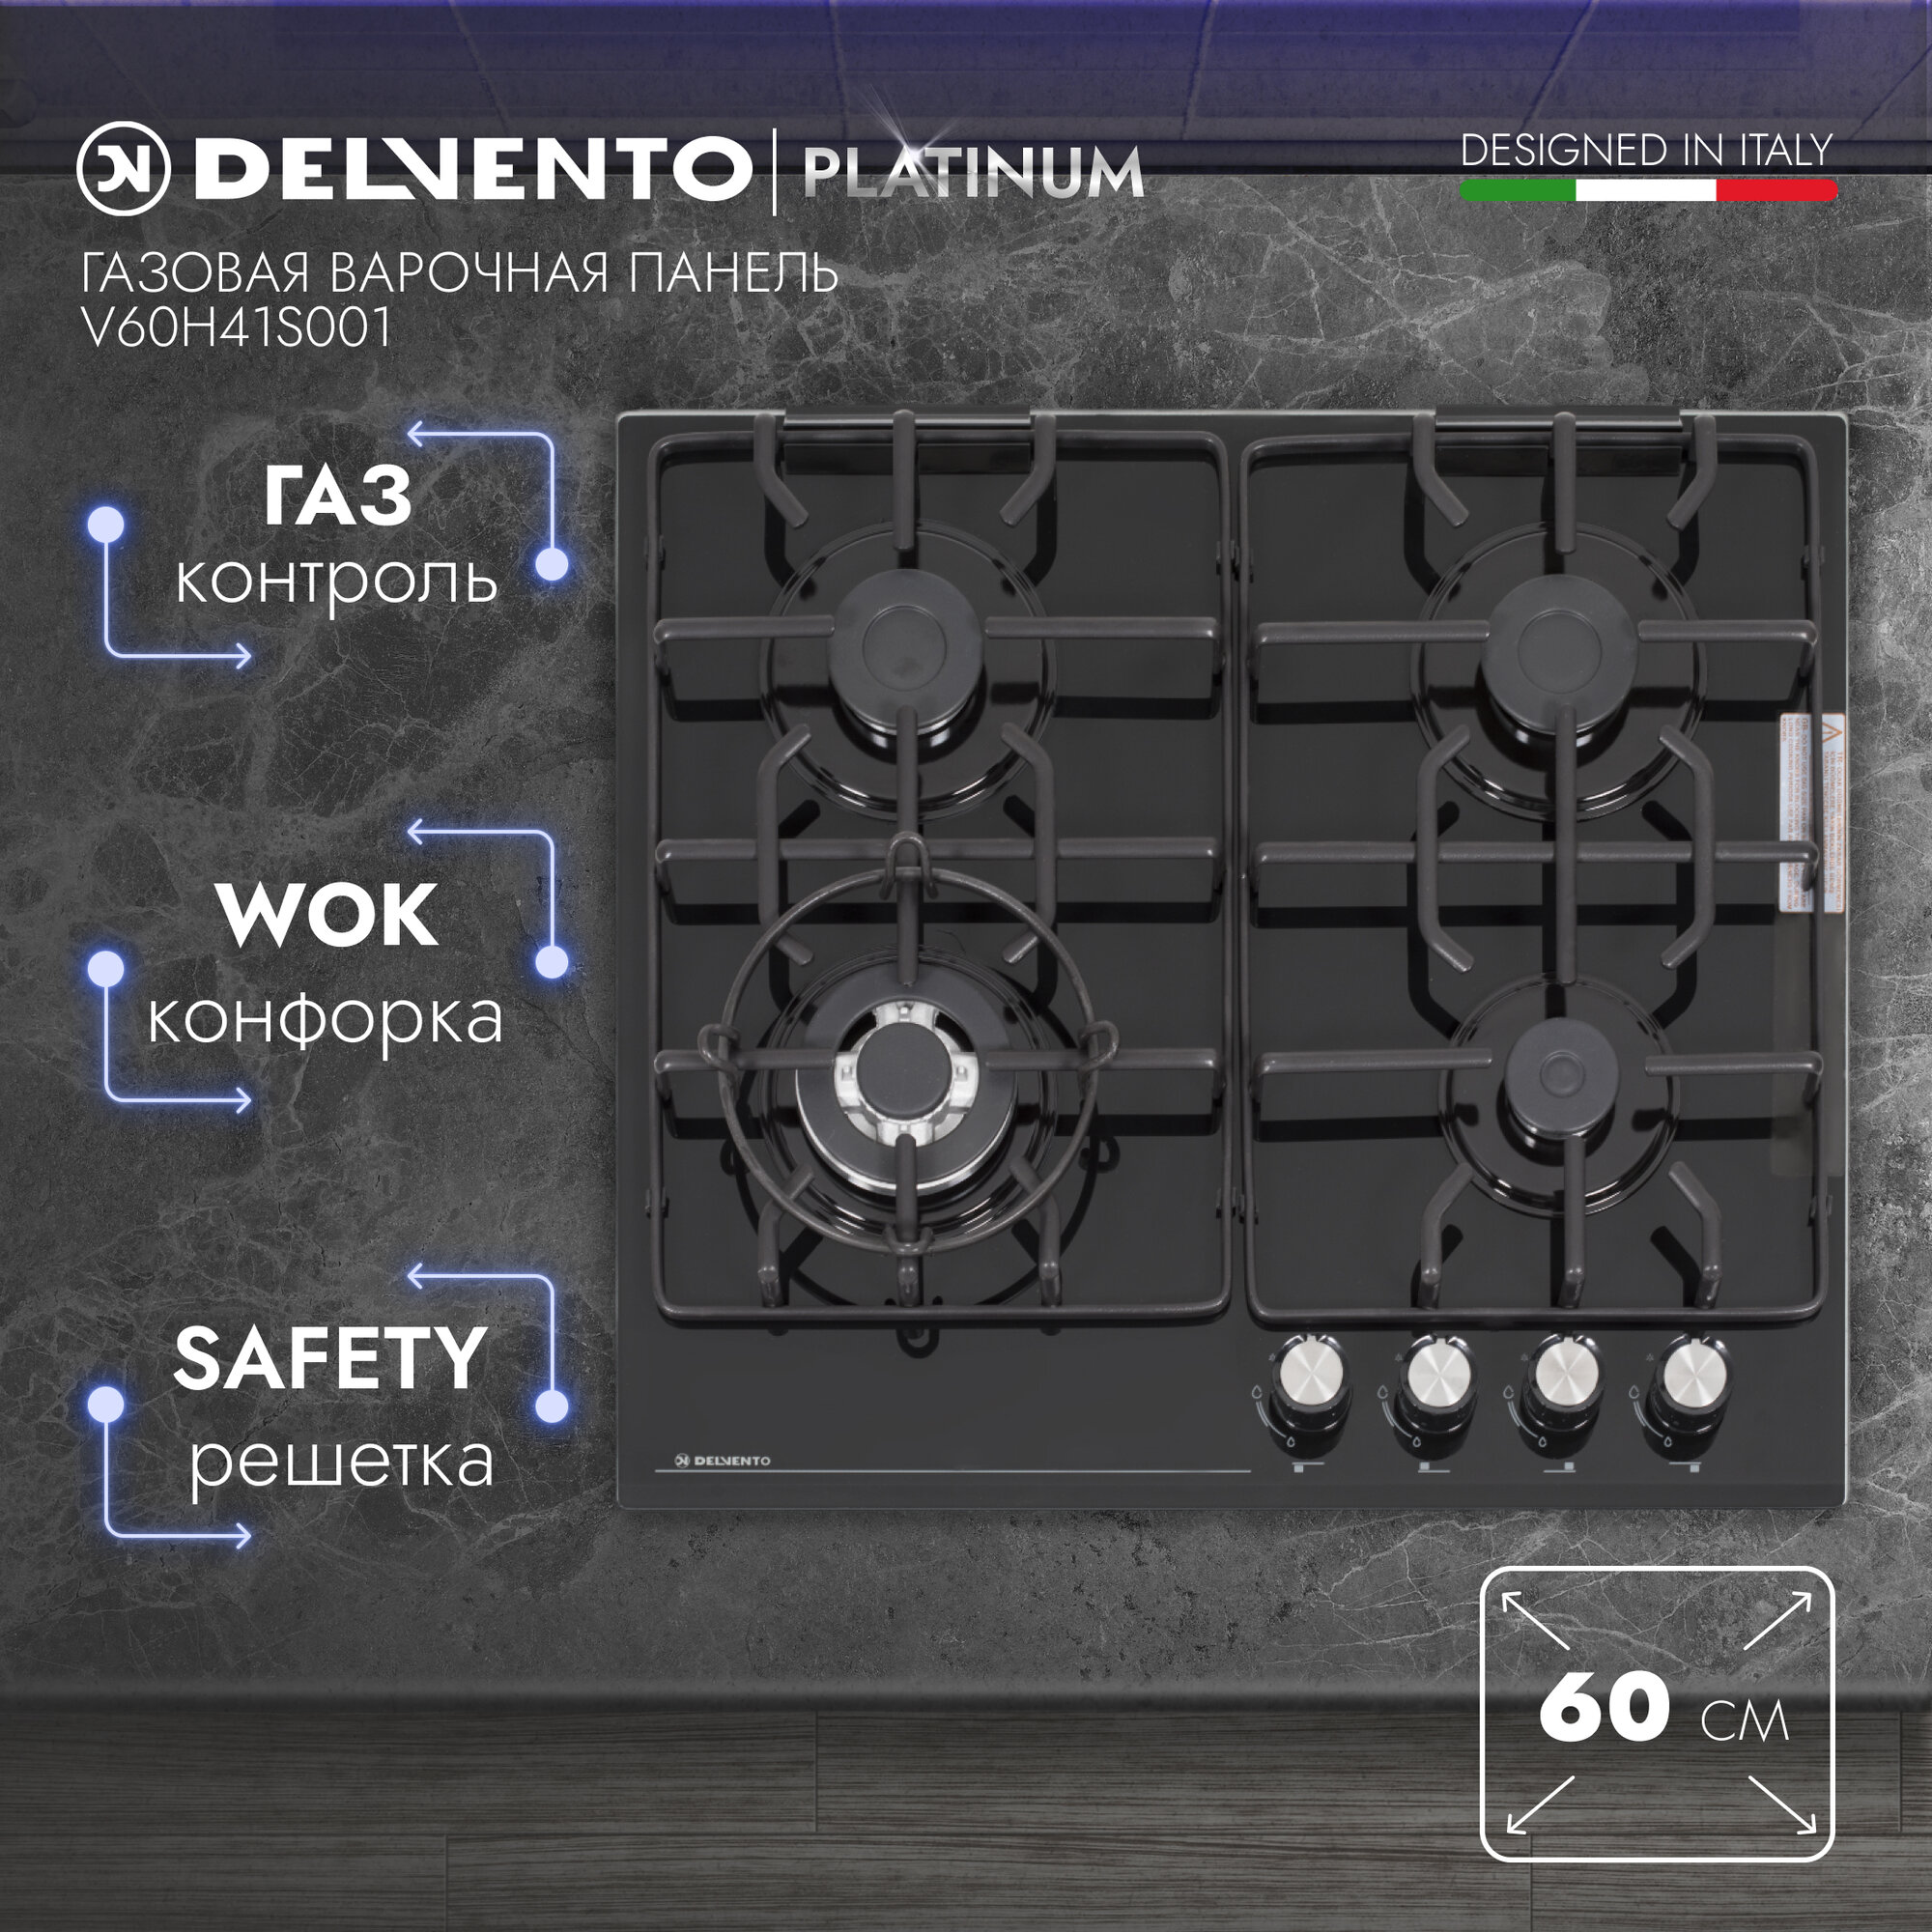 Варочная панель газовая DELVENTO V60H41S001 / 60 см / Газ-контроль / WOK-конфорка / Закалённое стекло / фронтальная панель управления / safety решетка / жиклеры для баллонного газа / полный комплект / 3 года гарантии